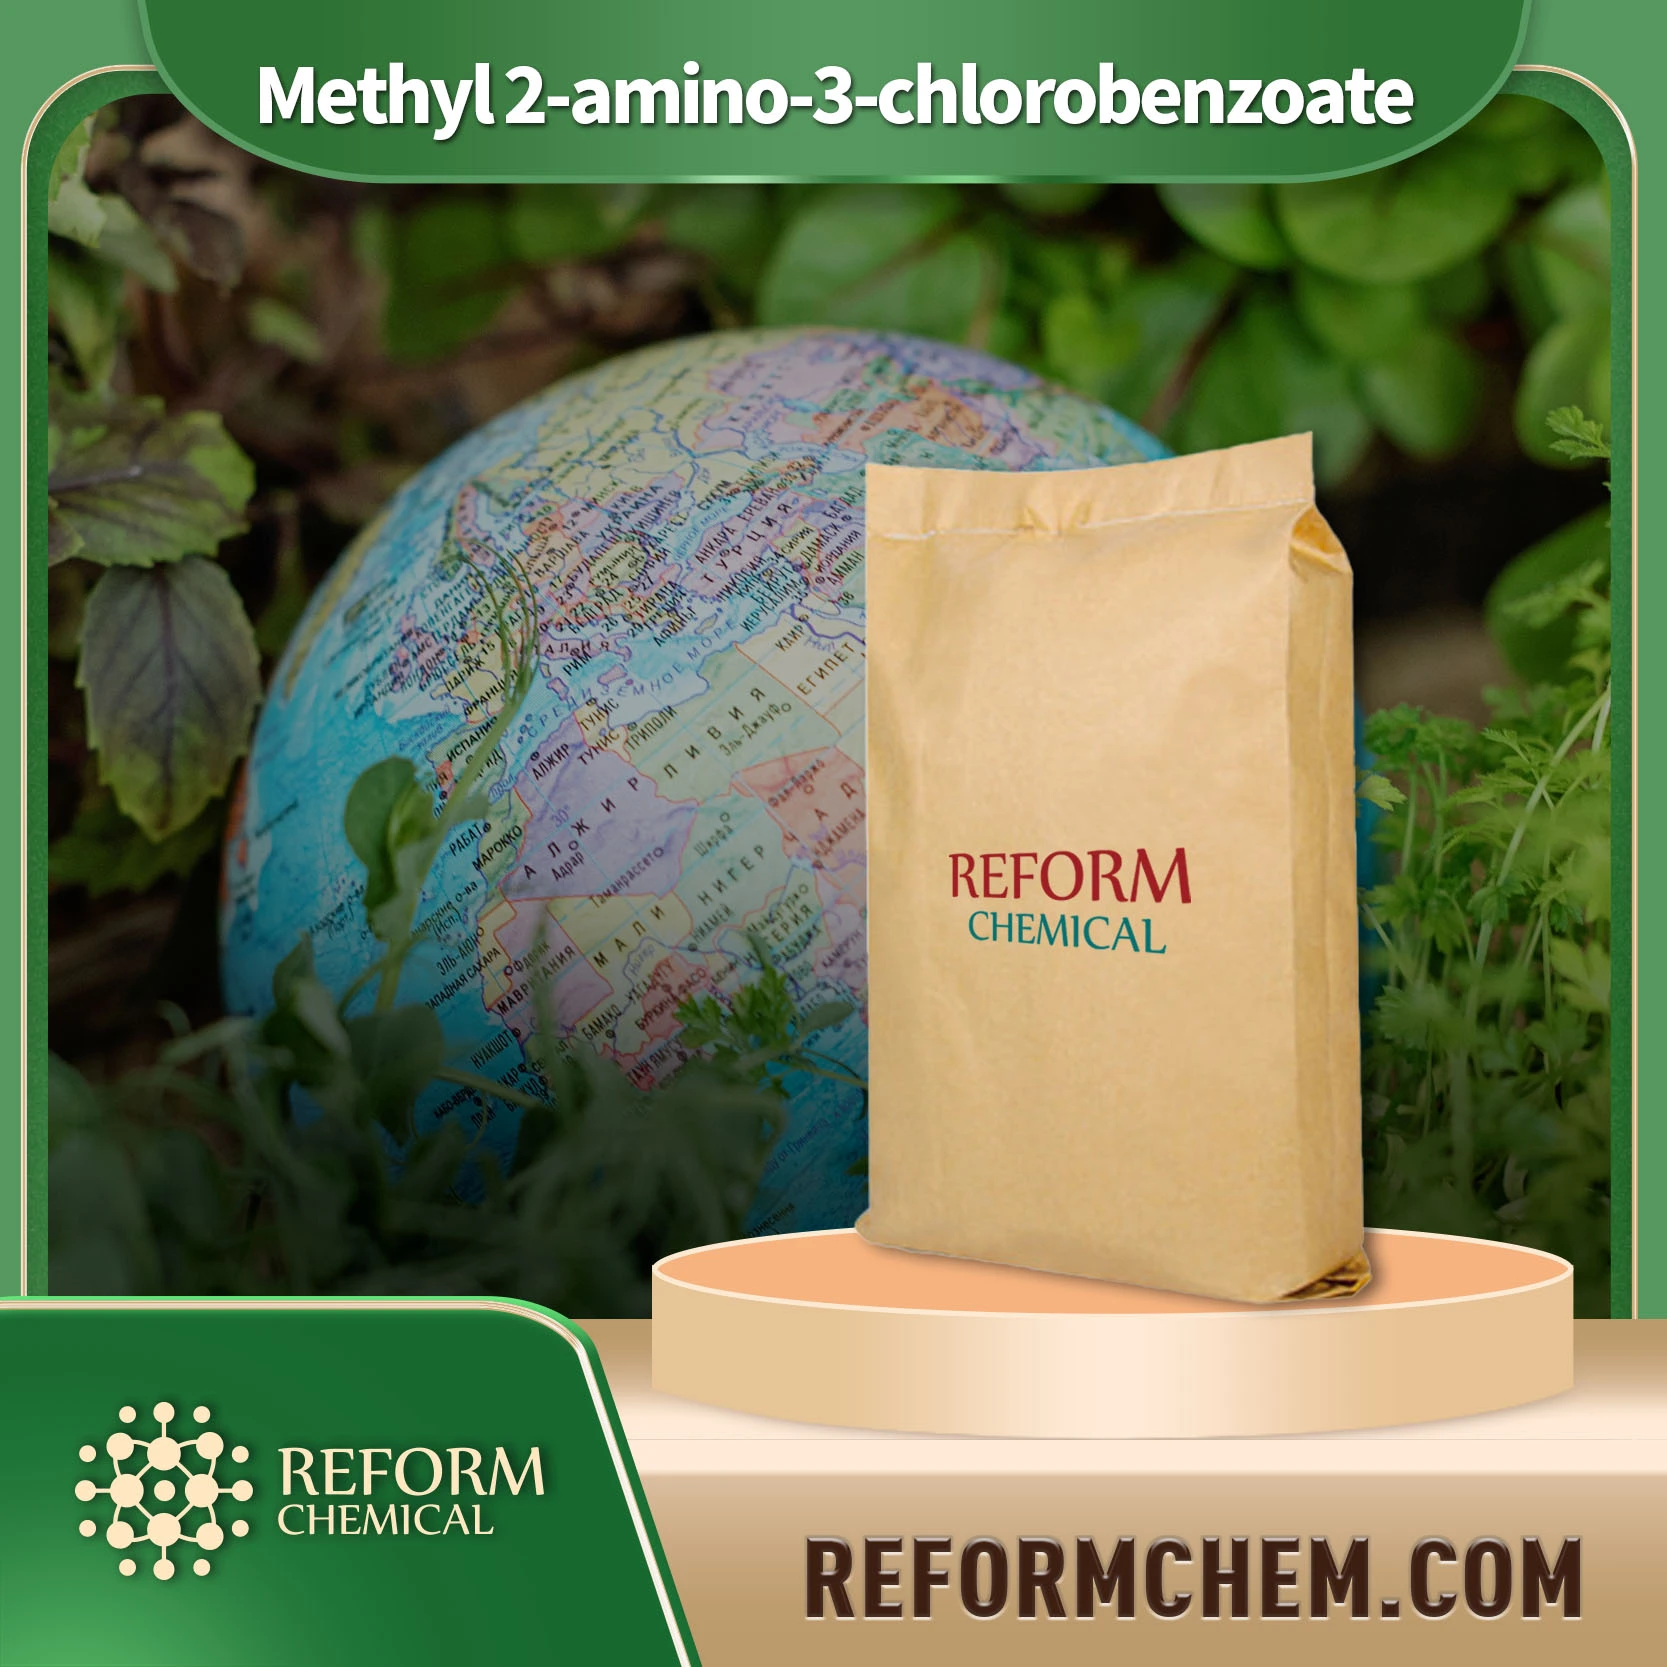 Methyl 2-amino-3-chlorobenzoate